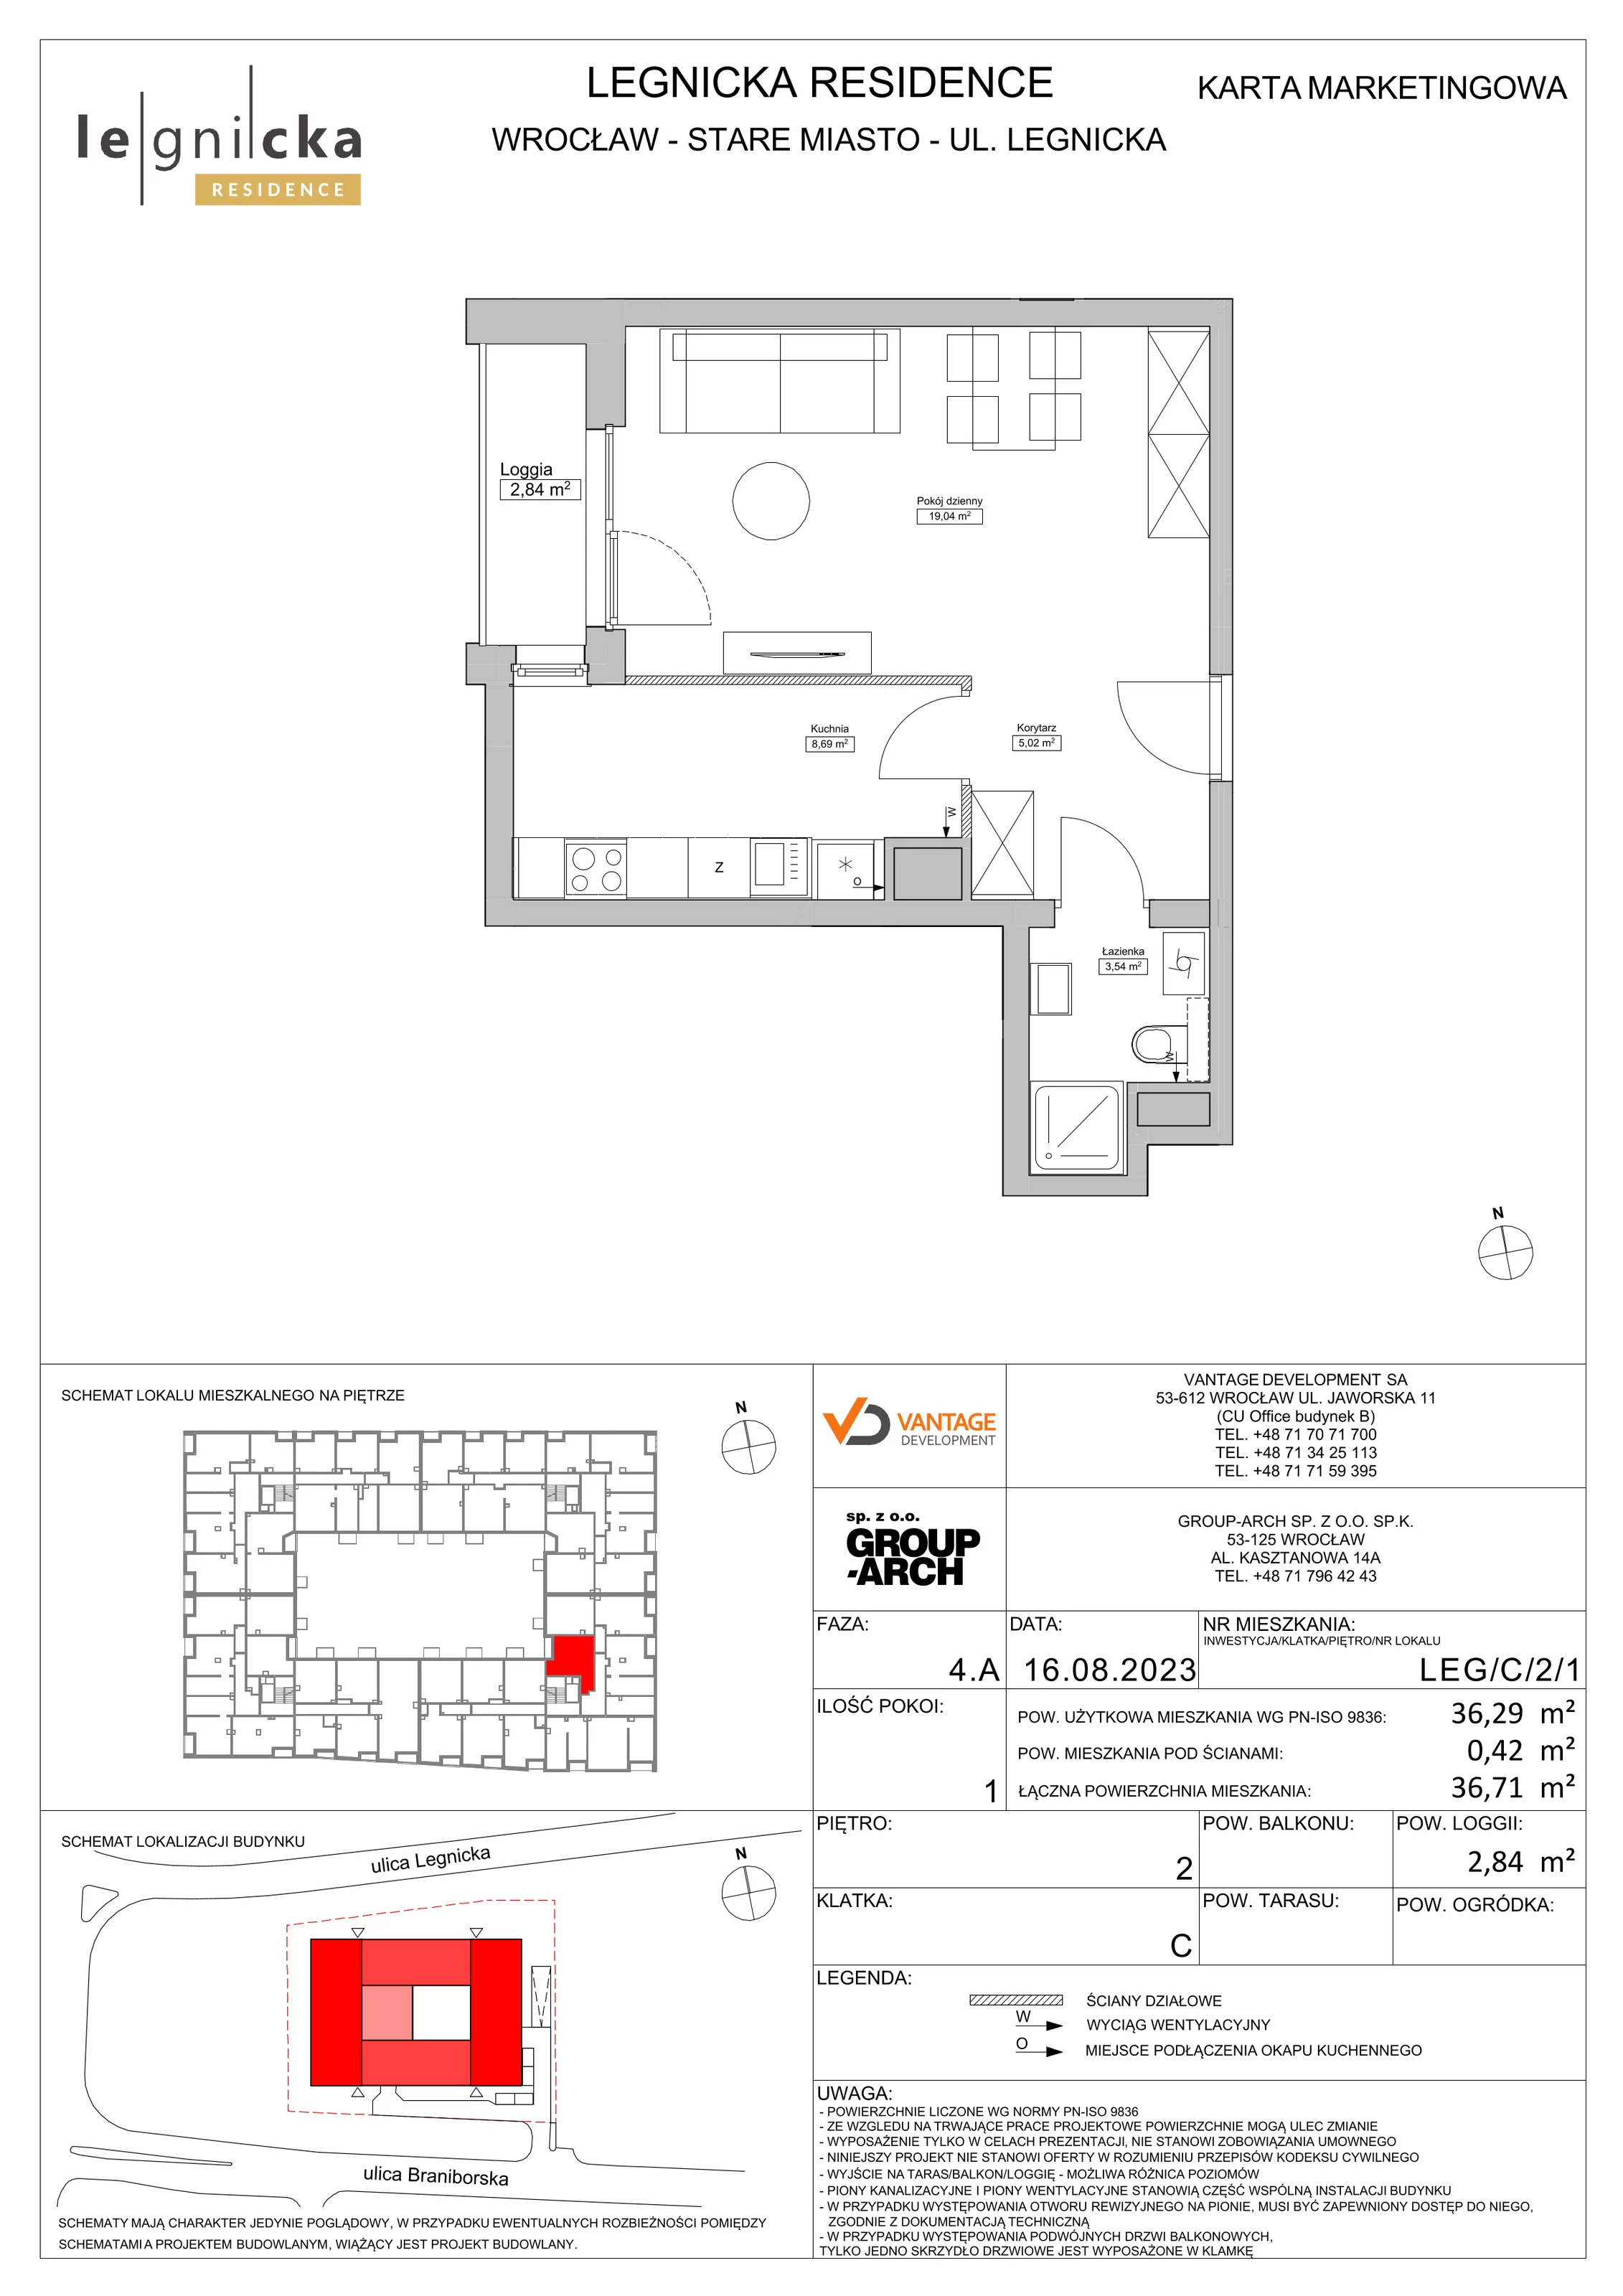 Apartament inwestycyjny 36,29 m², piętro 2, oferta nr LEG/C/2/1, Legnicka Residence, Wrocław, Szczepin, ul. Legnicka 36